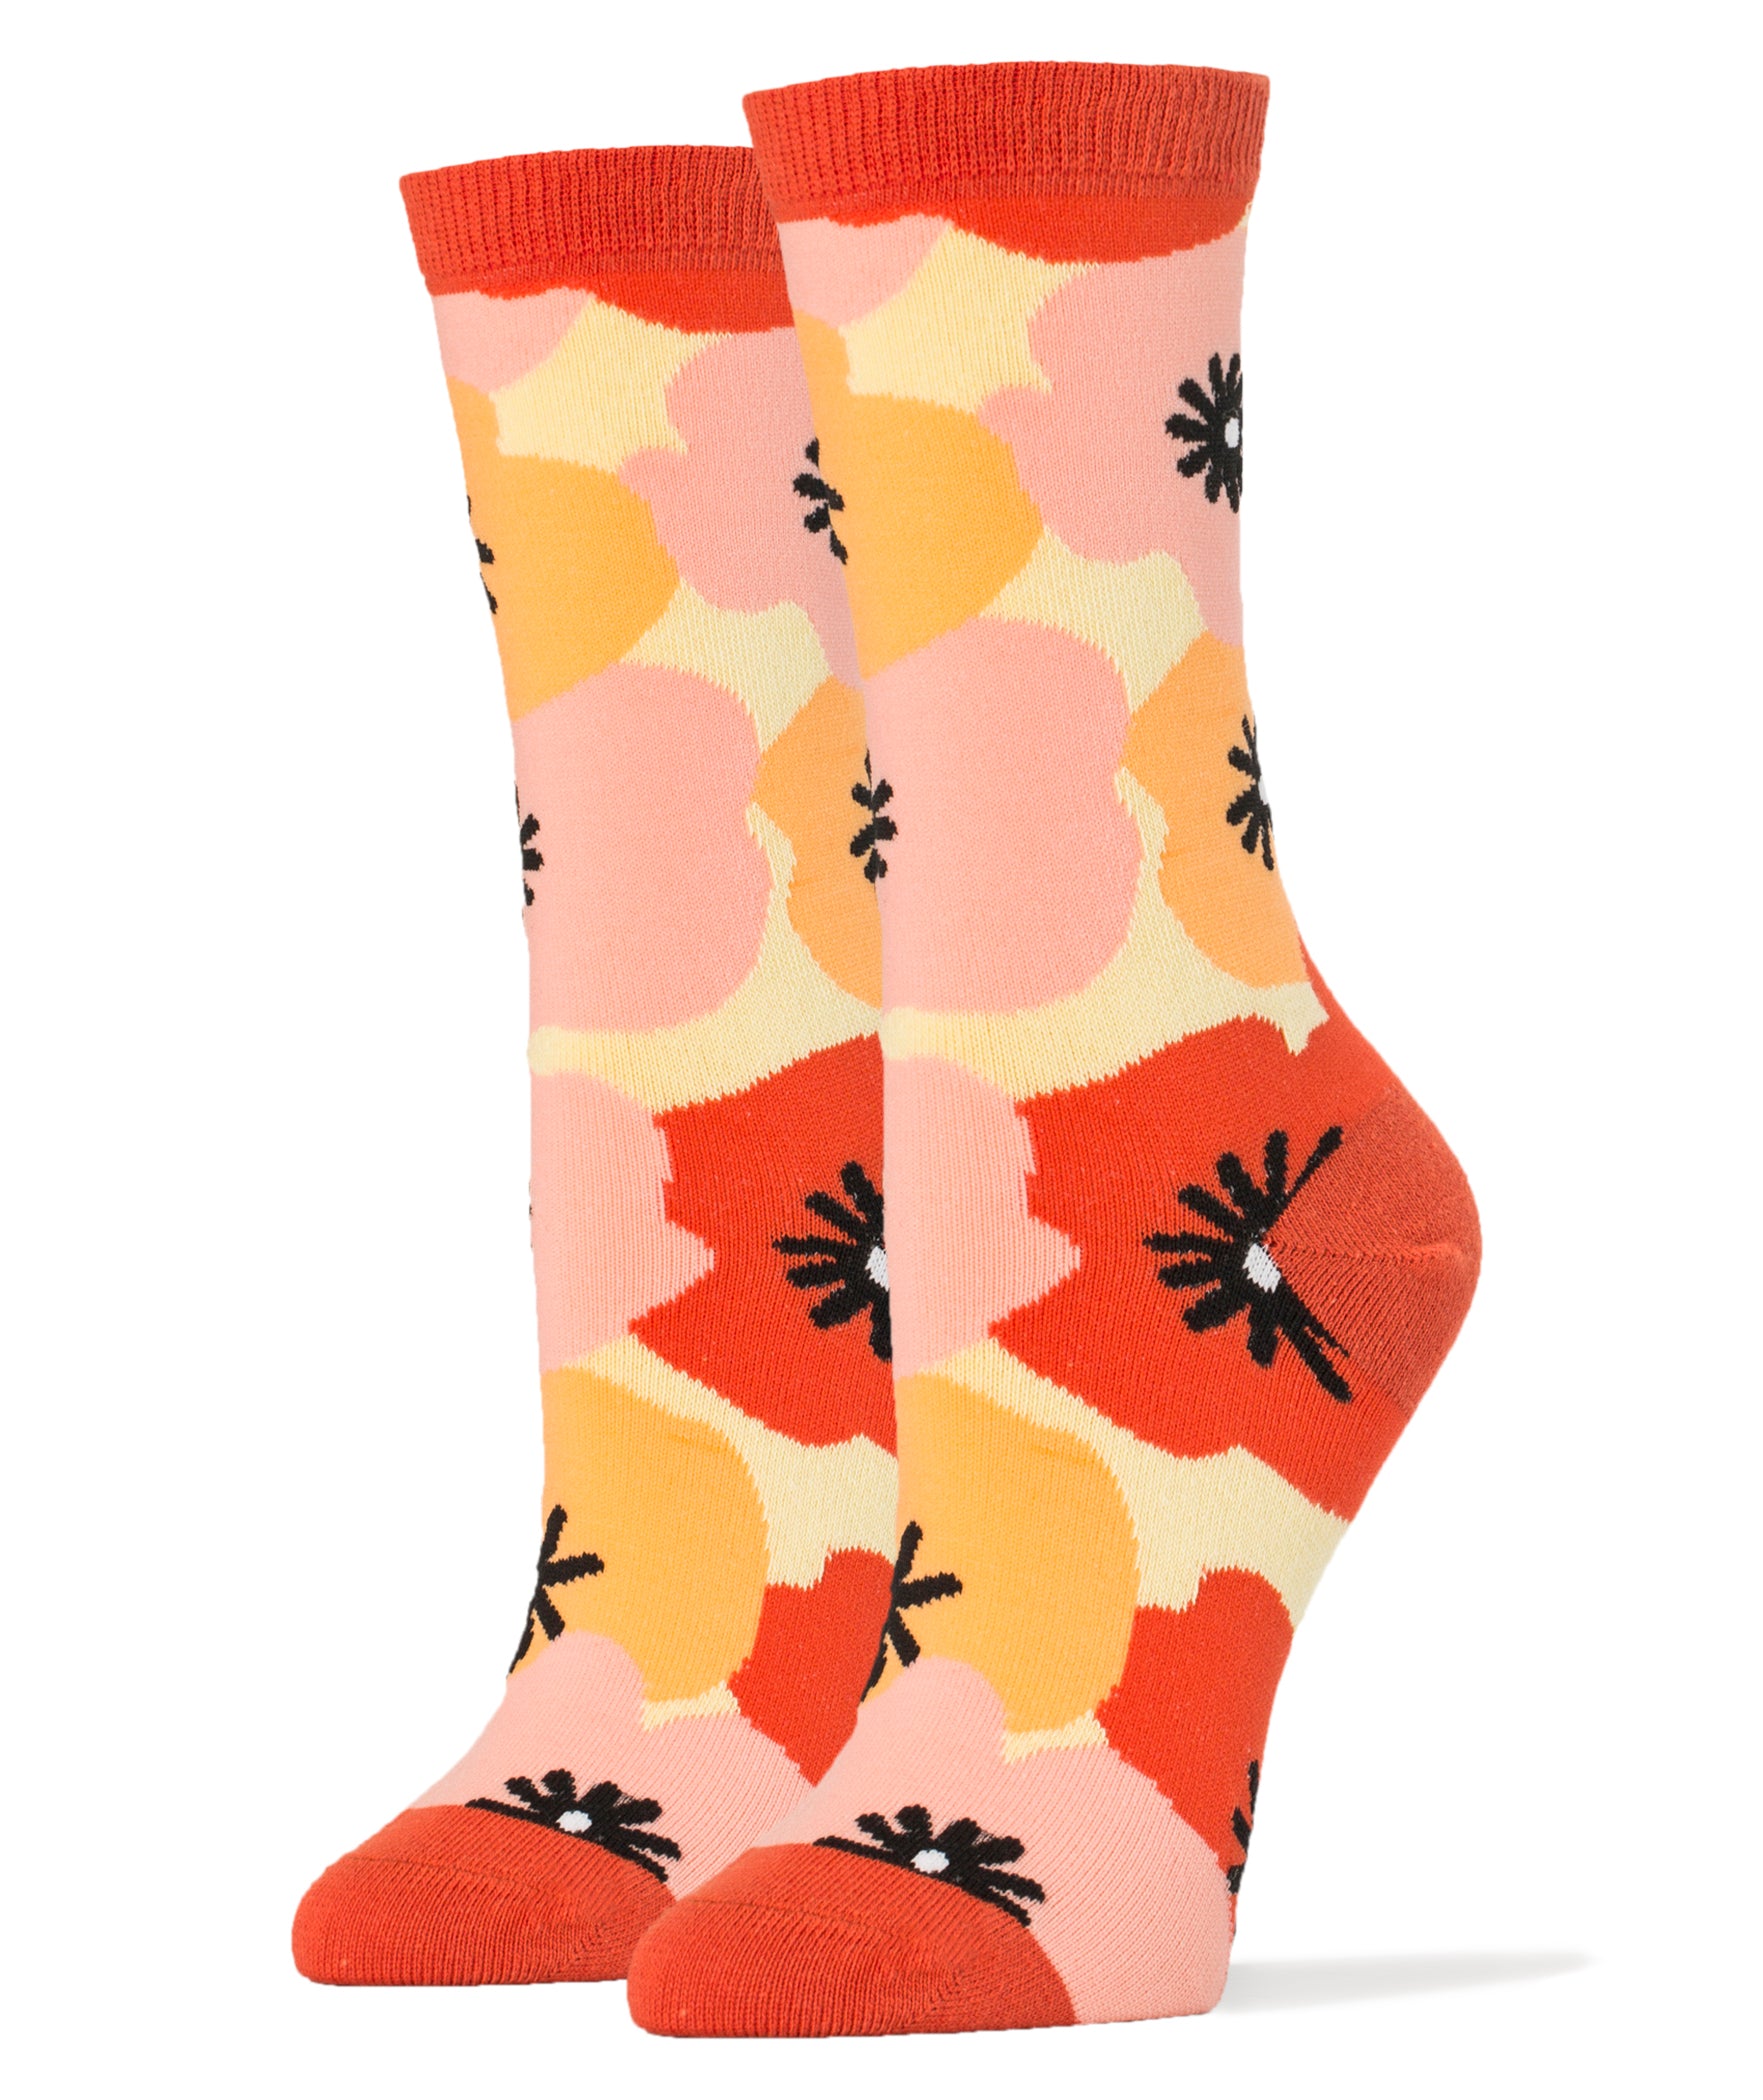 Flower Power Socks | Novelty Crew Socks For Women